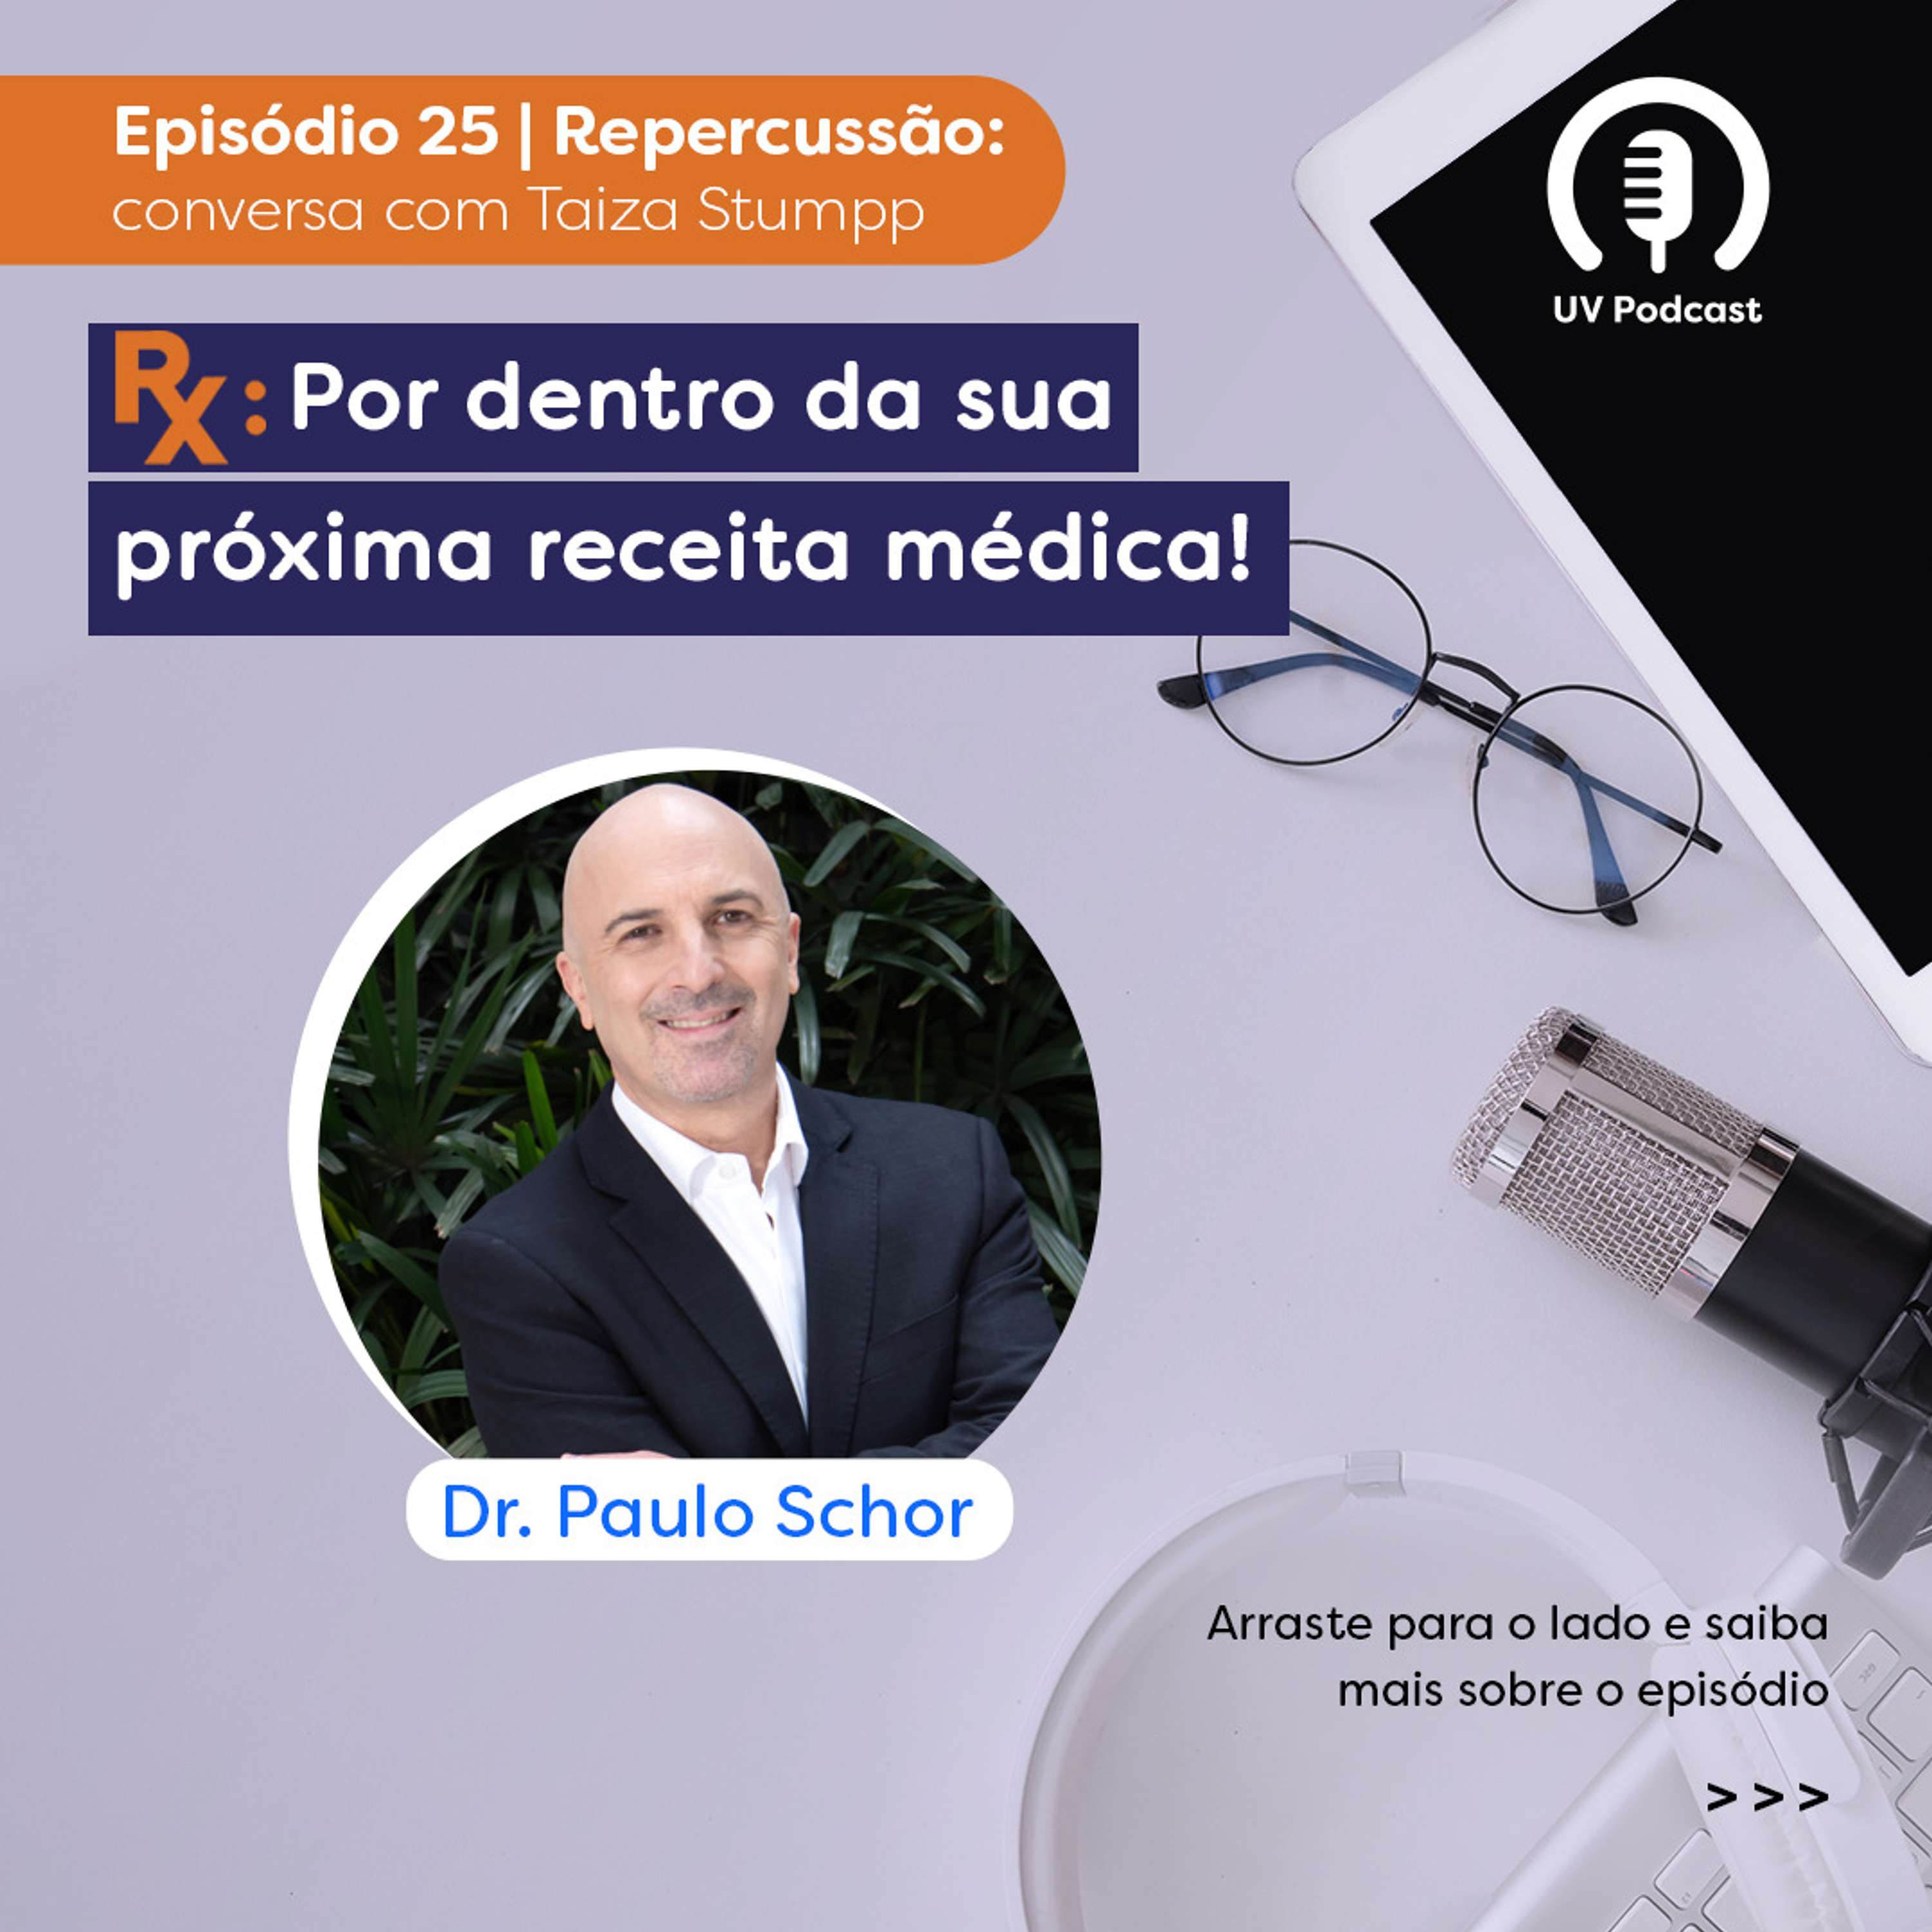 Paulo Schor | Programa Rx | Episódio 25 - Repercussão do papo com Taiza Stumpp Teixeira